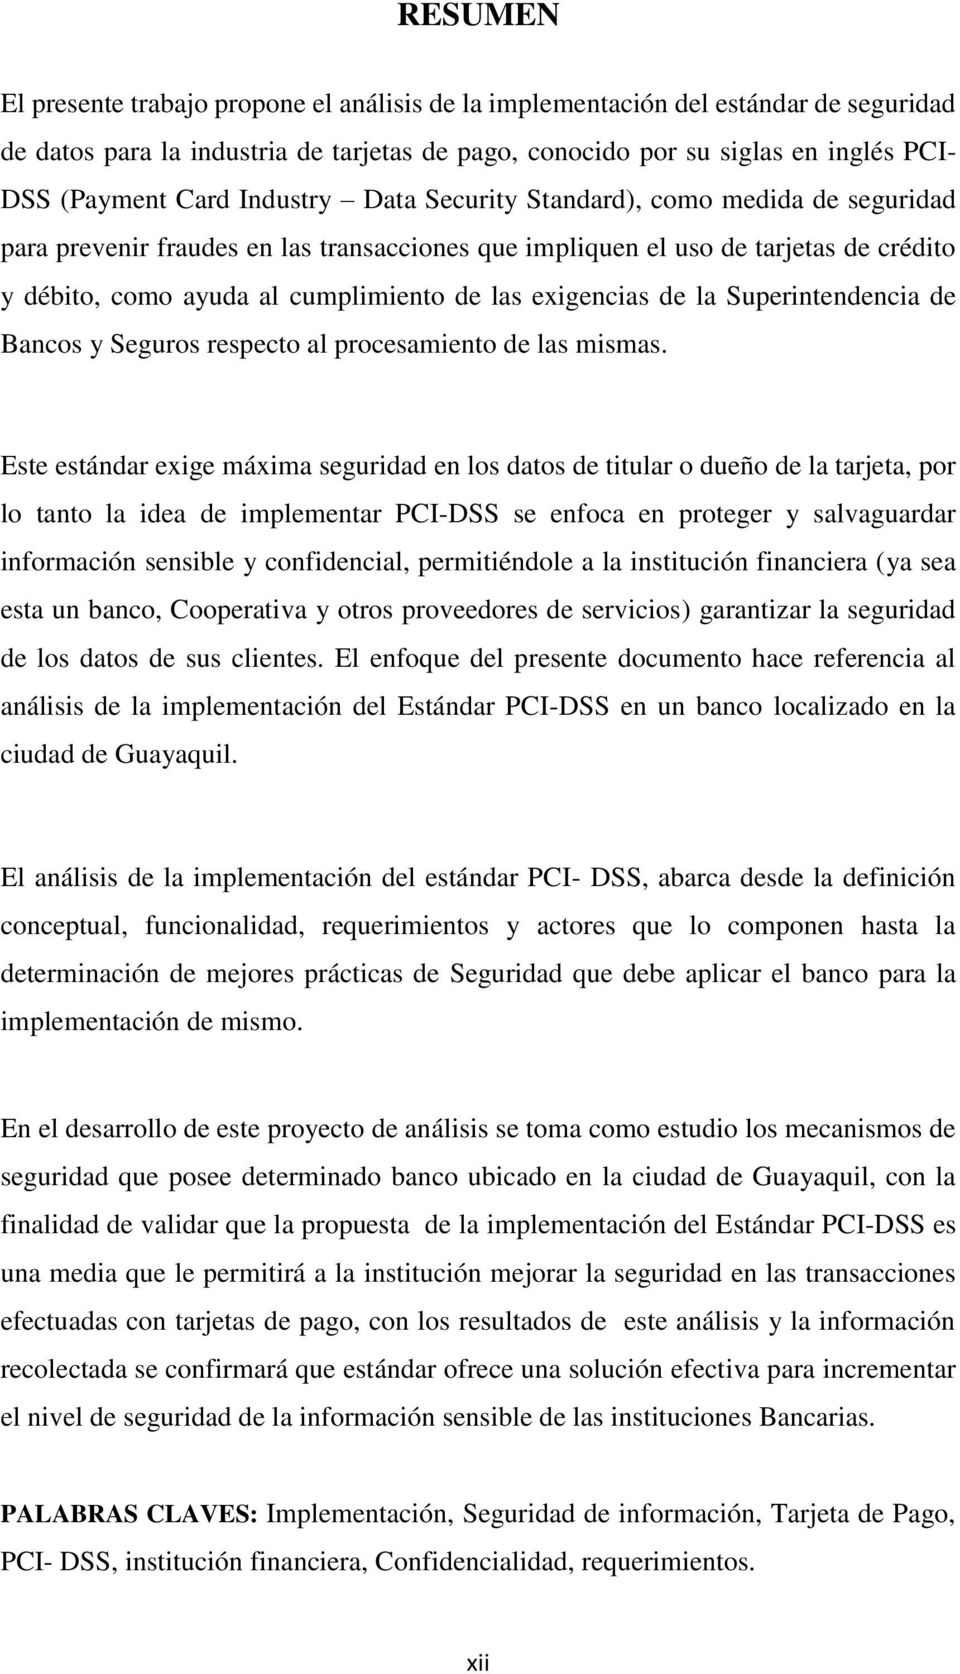 exigencias de la Superintendencia de Bancos y Seguros respecto al procesamiento de las mismas.